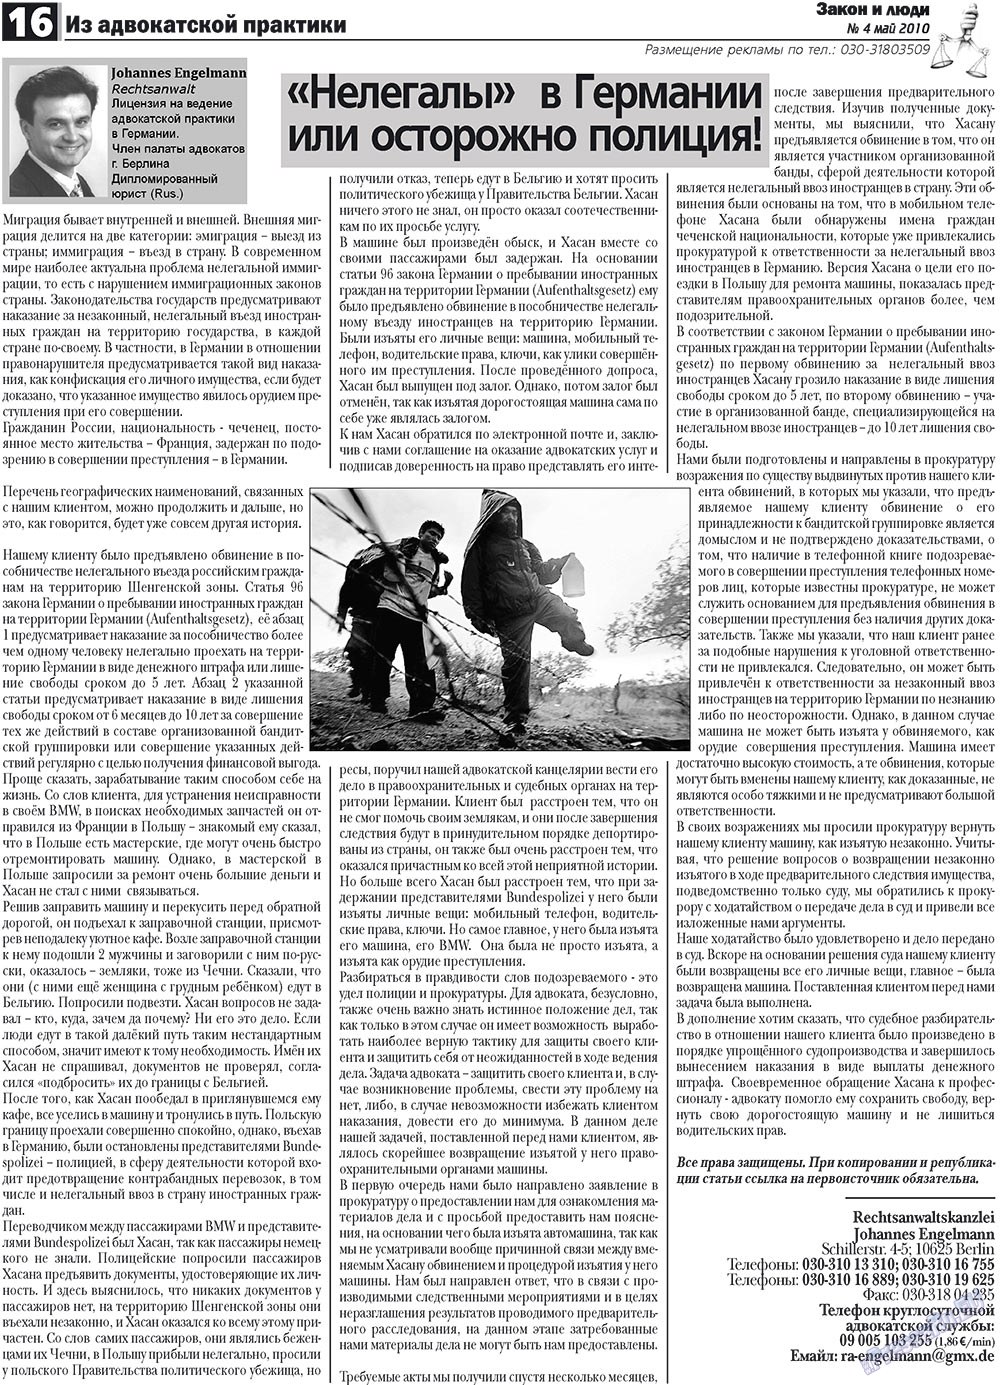 Закон и люди (газета). 2010 год, номер 4, стр. 16